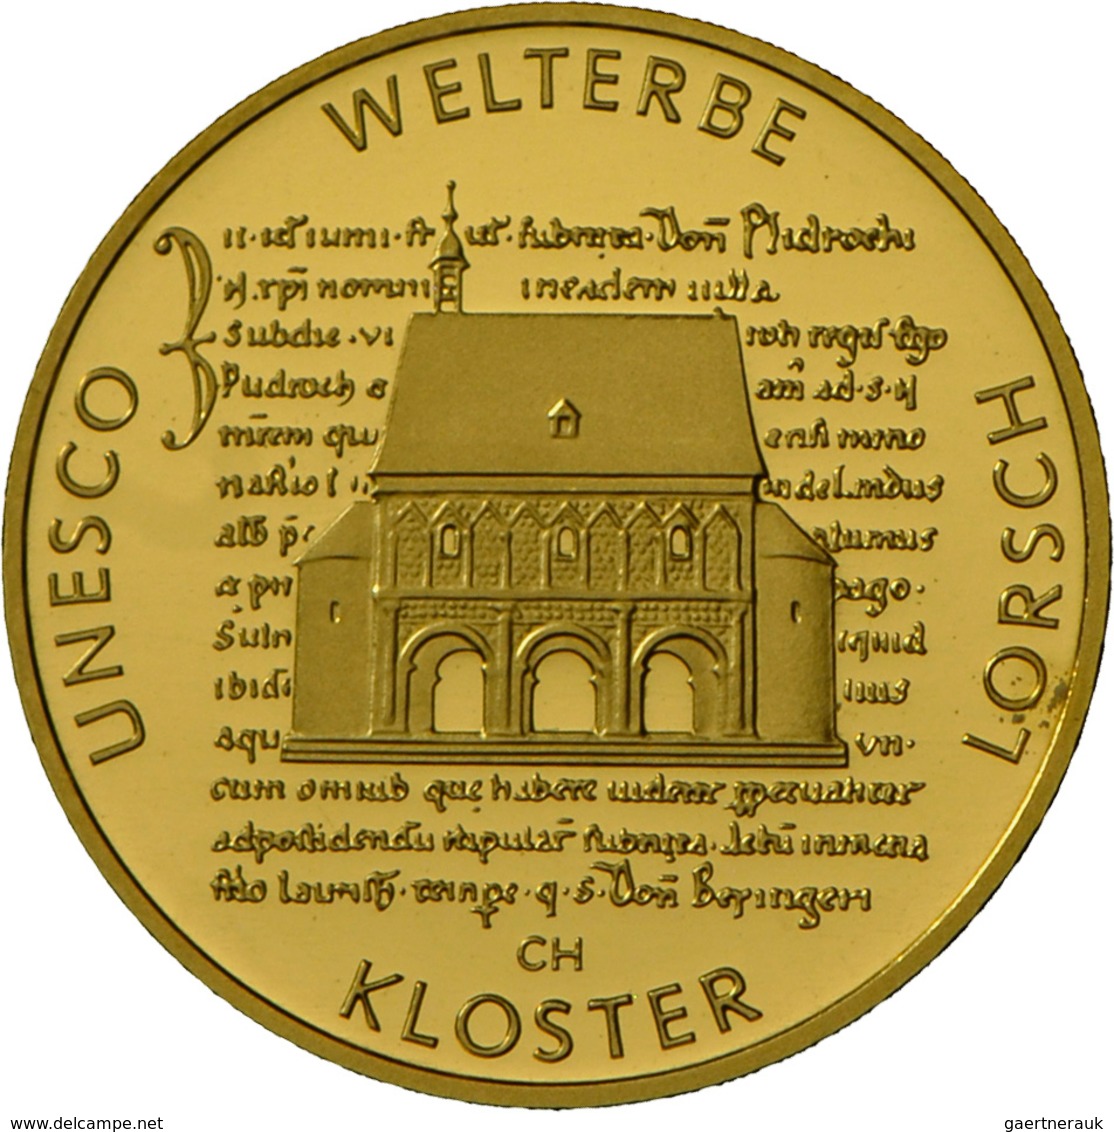 Deutschland - Anlagegold: 5 X 100 Euro 2014 Kloster Lorsch (A,D,F,G,J) In Originalkapsel, Mit Zertif - Alemania